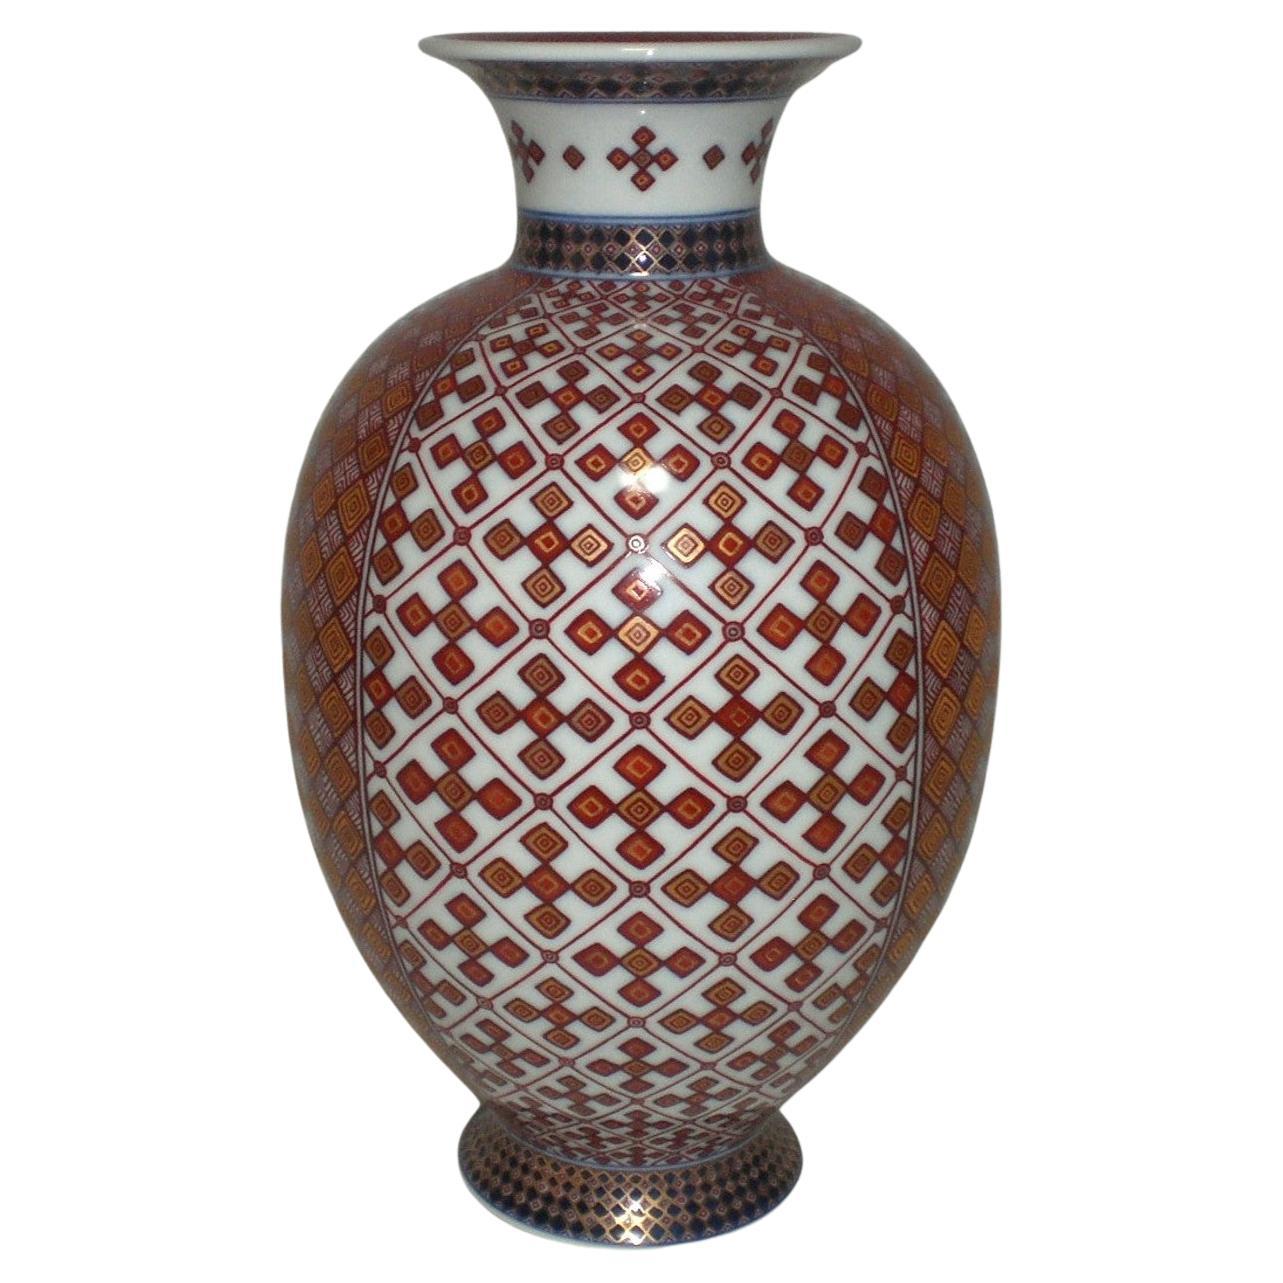 Vase japonais contemporain en porcelaine rouge, bleue et dorée par un maître artiste